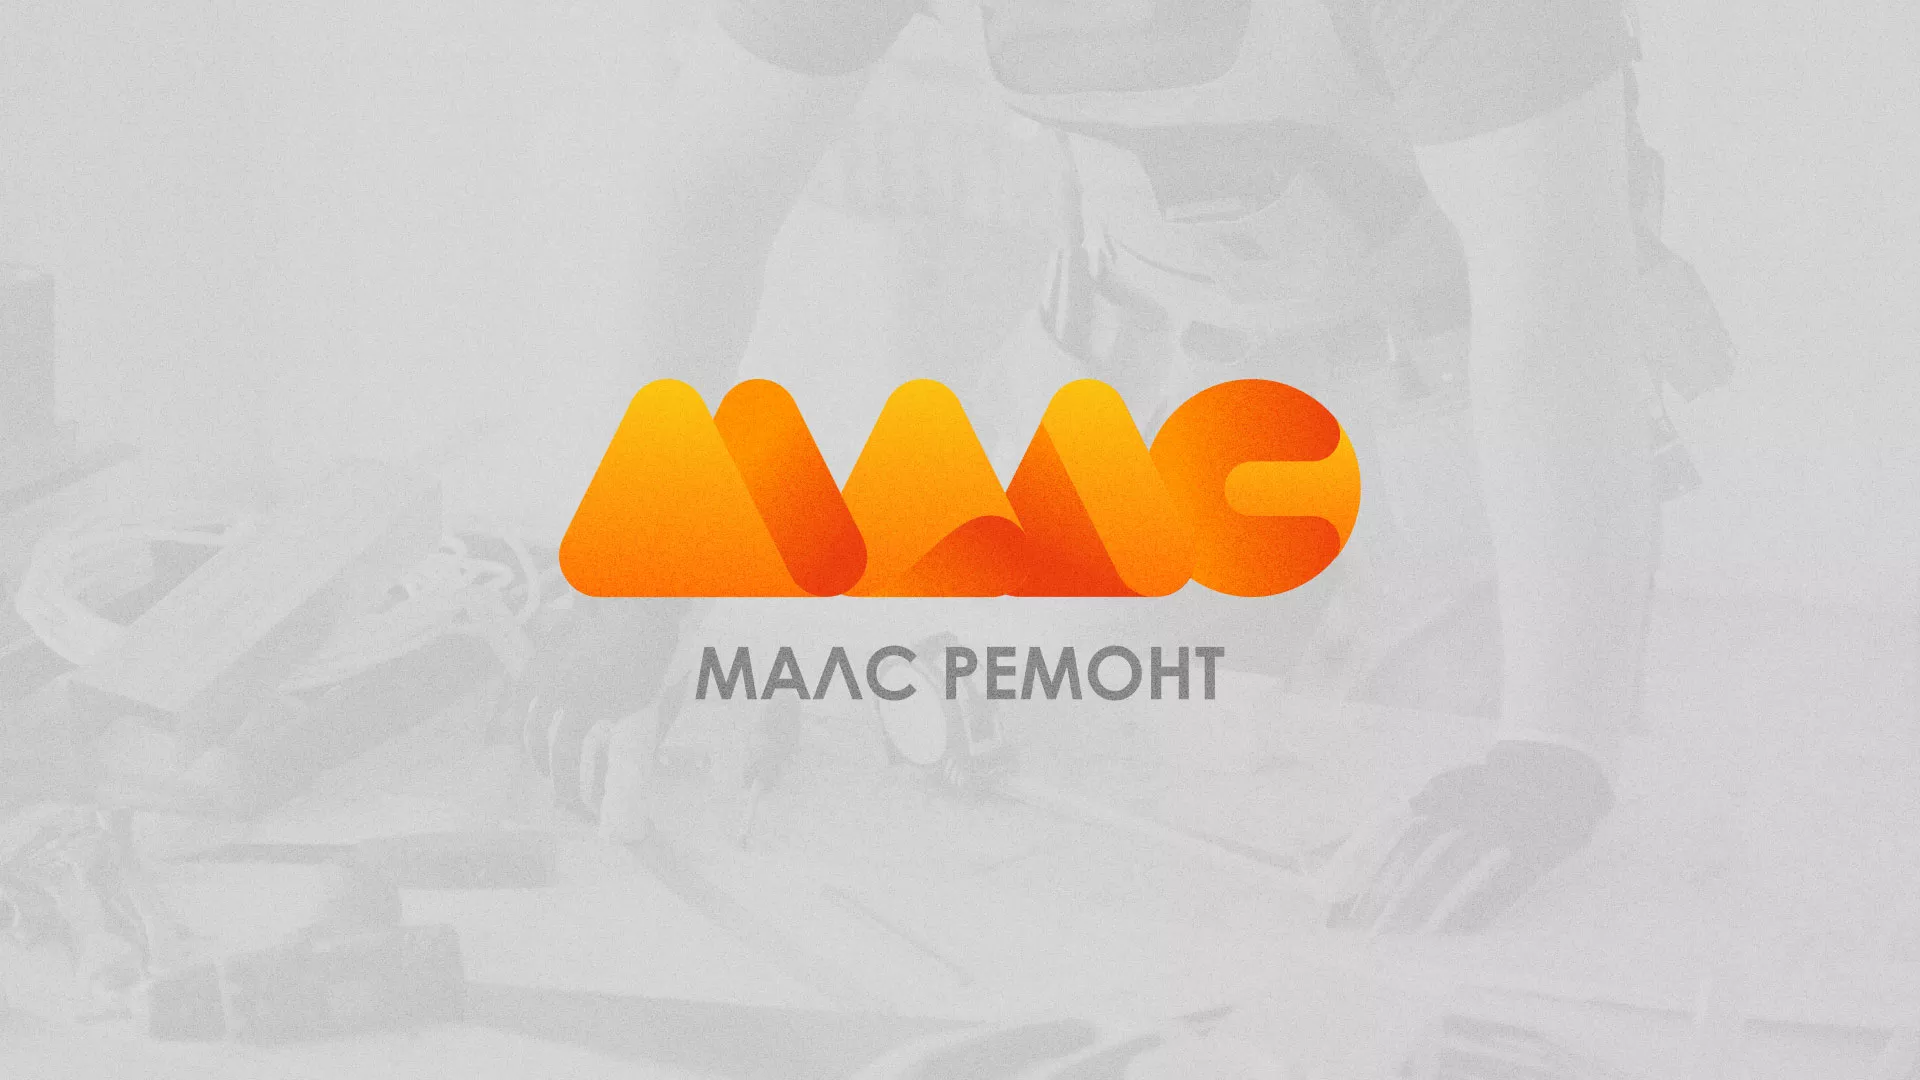 Создание логотипа для компании «МАЛС РЕМОНТ» в Шенкурске